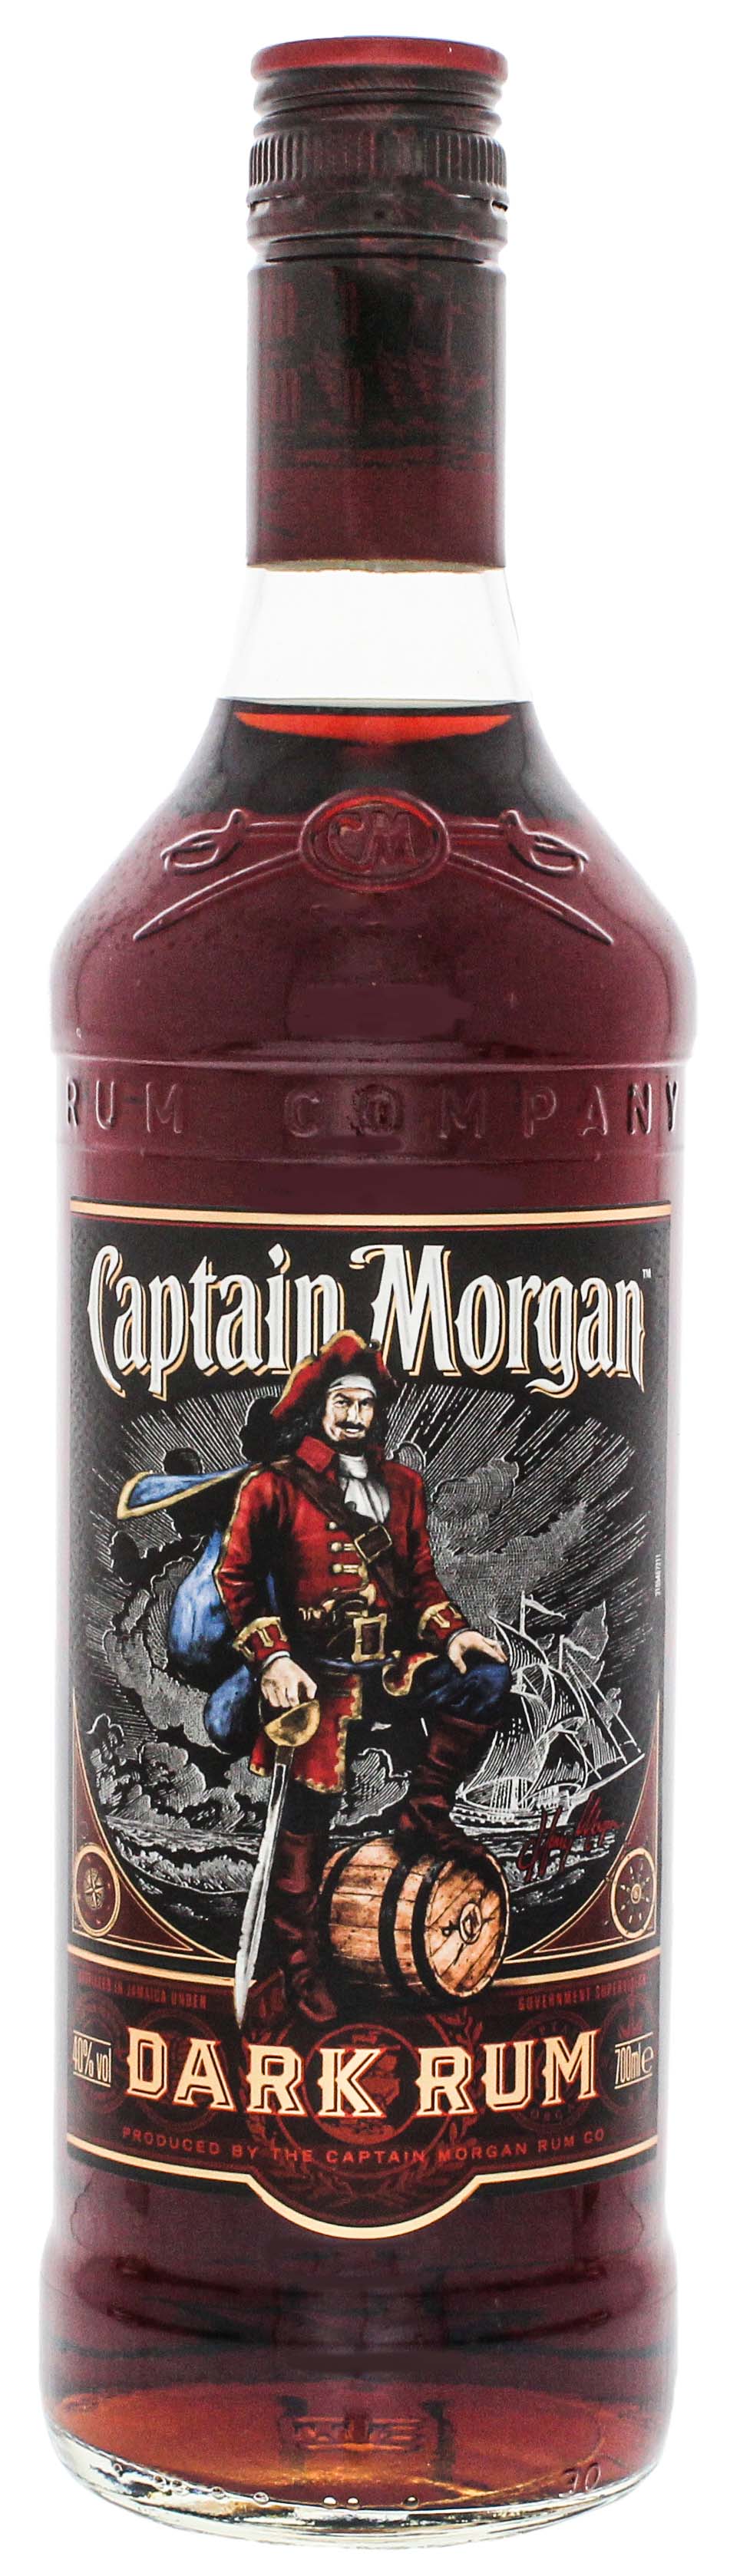 Captain Morgan Dark Rum 0,7L jetzt kaufen im Drinkology Online Shop!